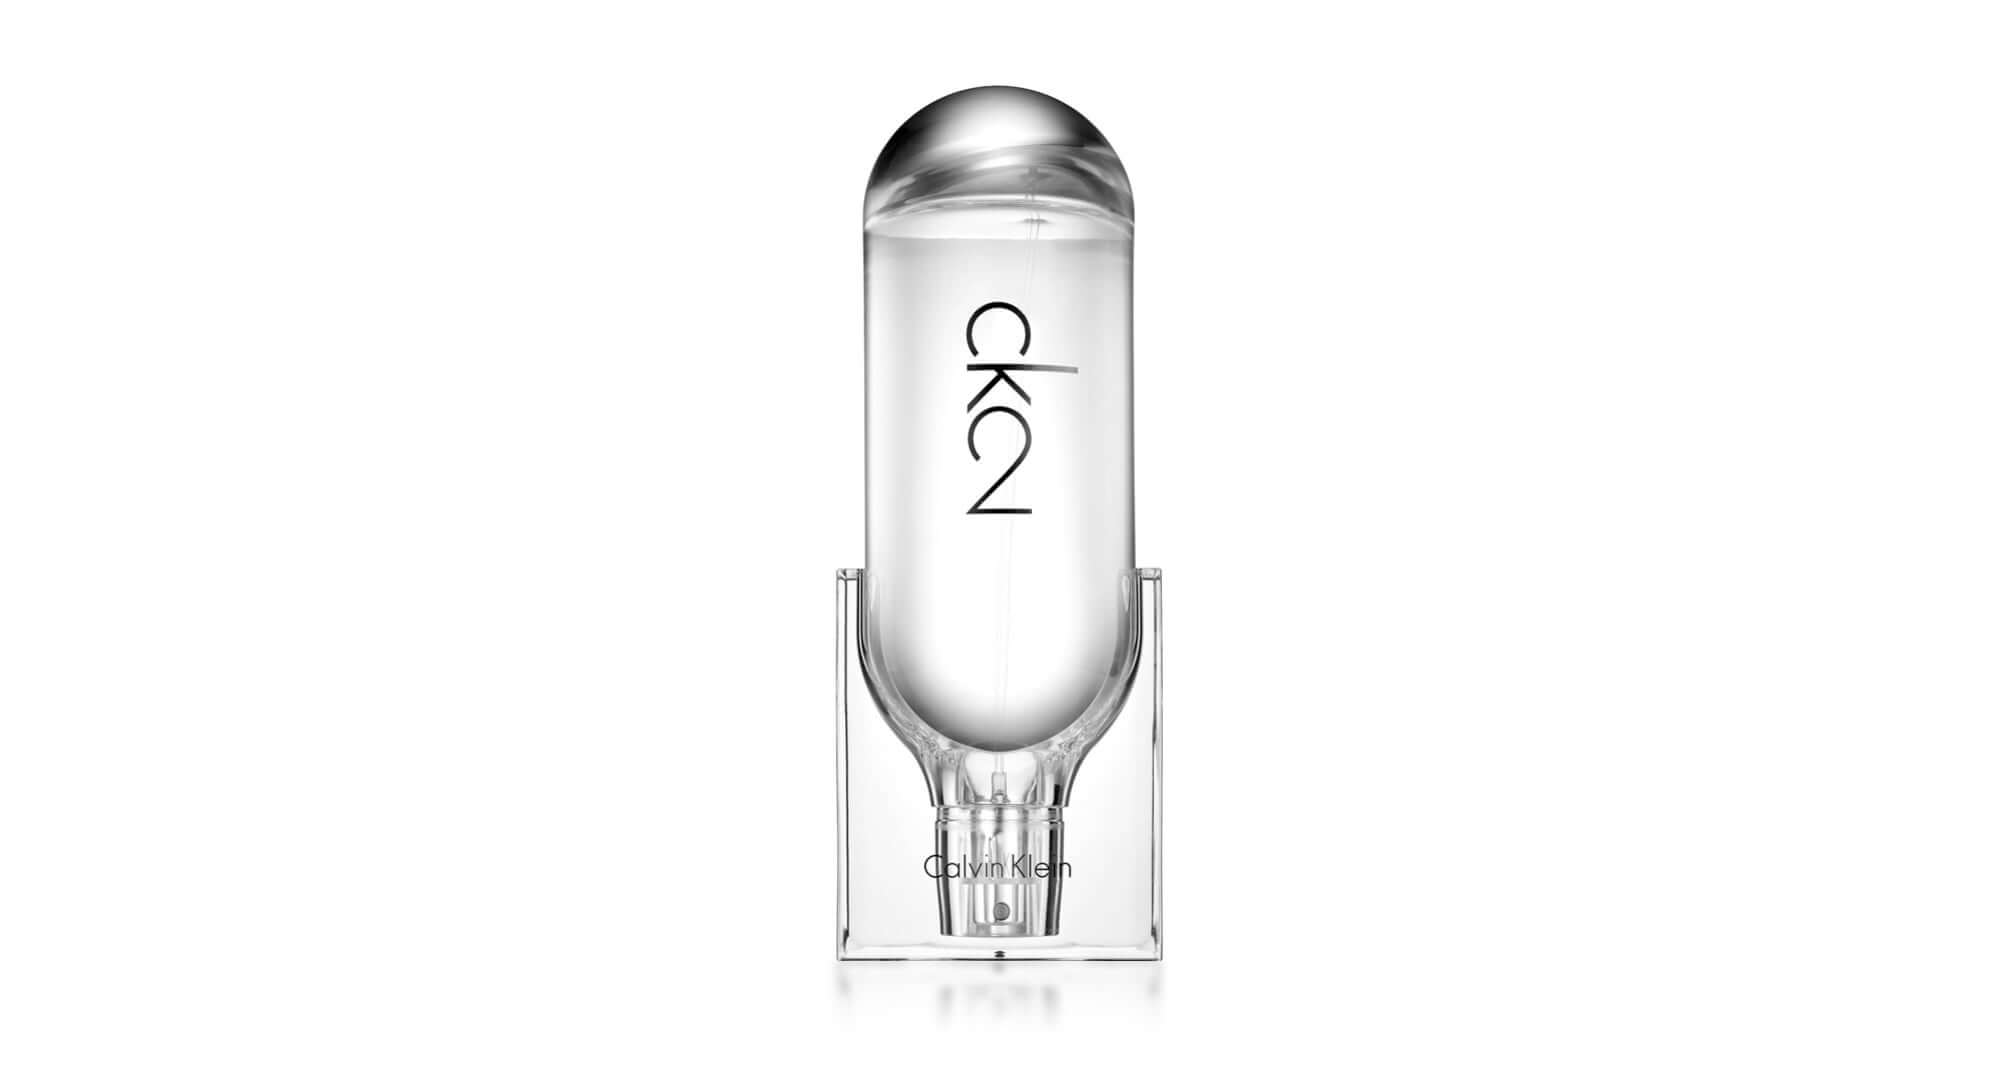 Craig Ward Designer Interview - Calvin Klein’s CK2 fragrance